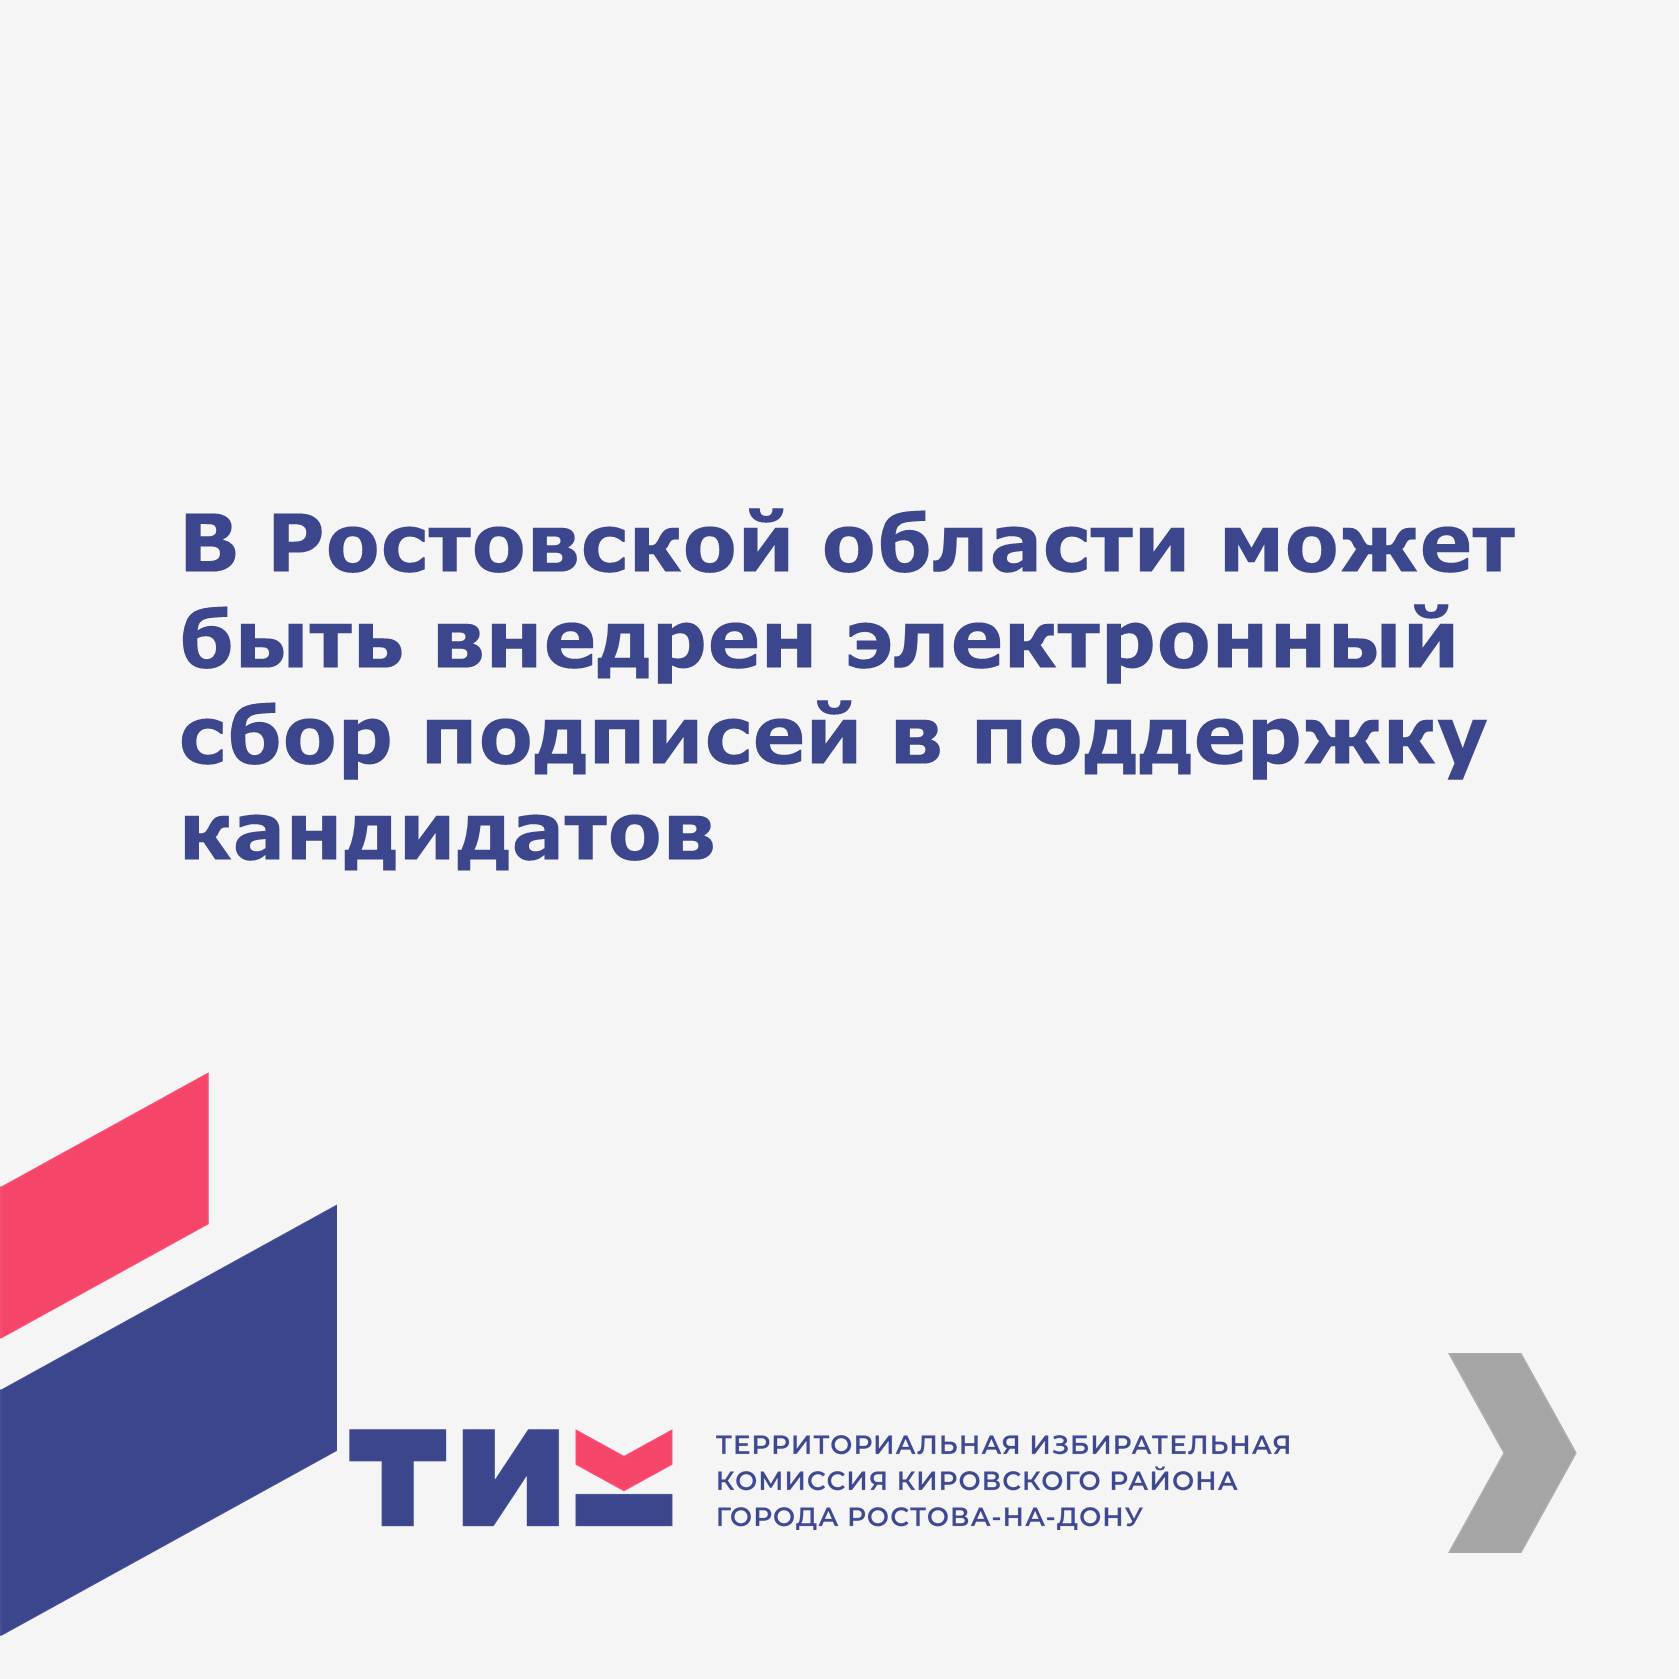 В Ростовской области может быть внедрен электронный	 сбор подписей в поддержку кандидатов